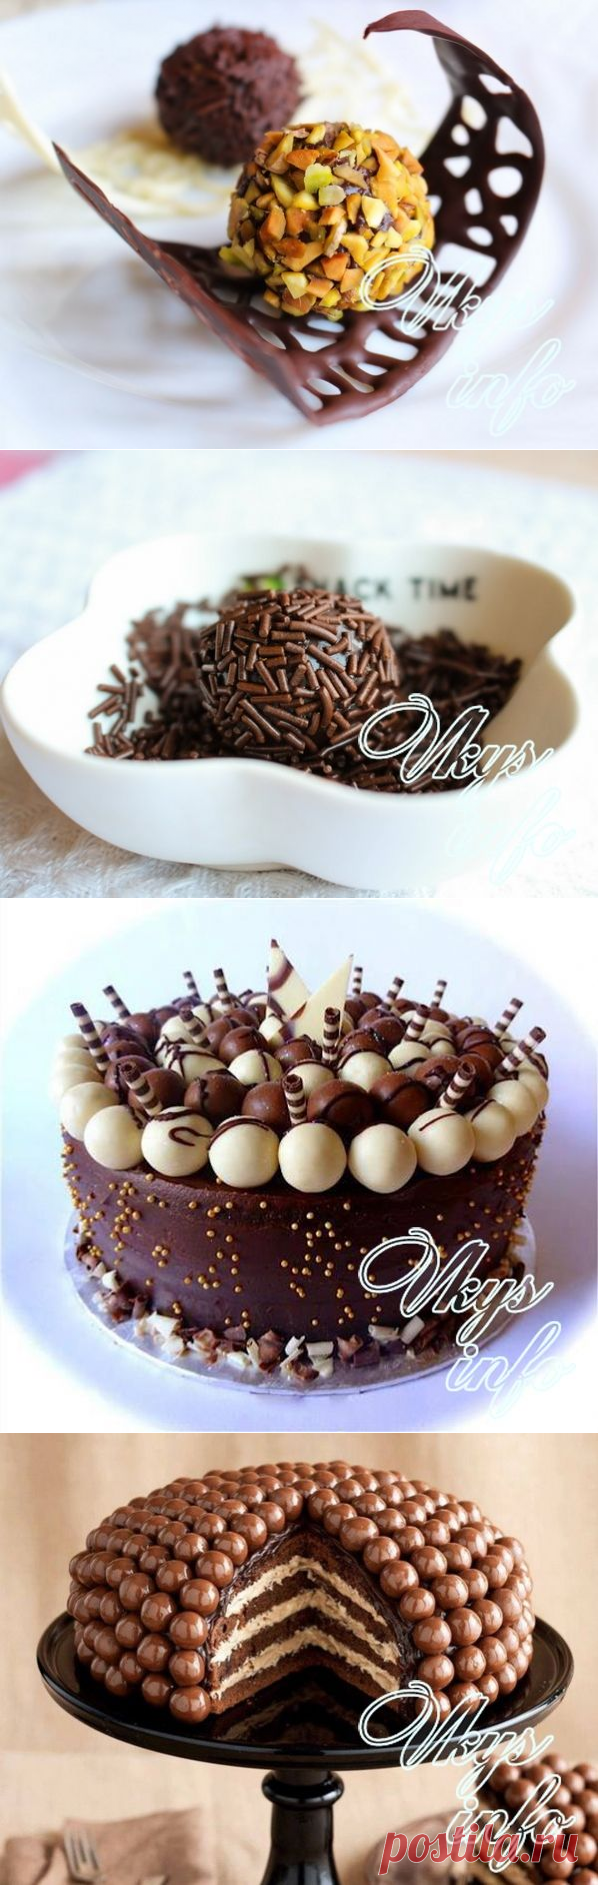 Как украсить торт шоколадом узором и конфетами – рецепт с фото